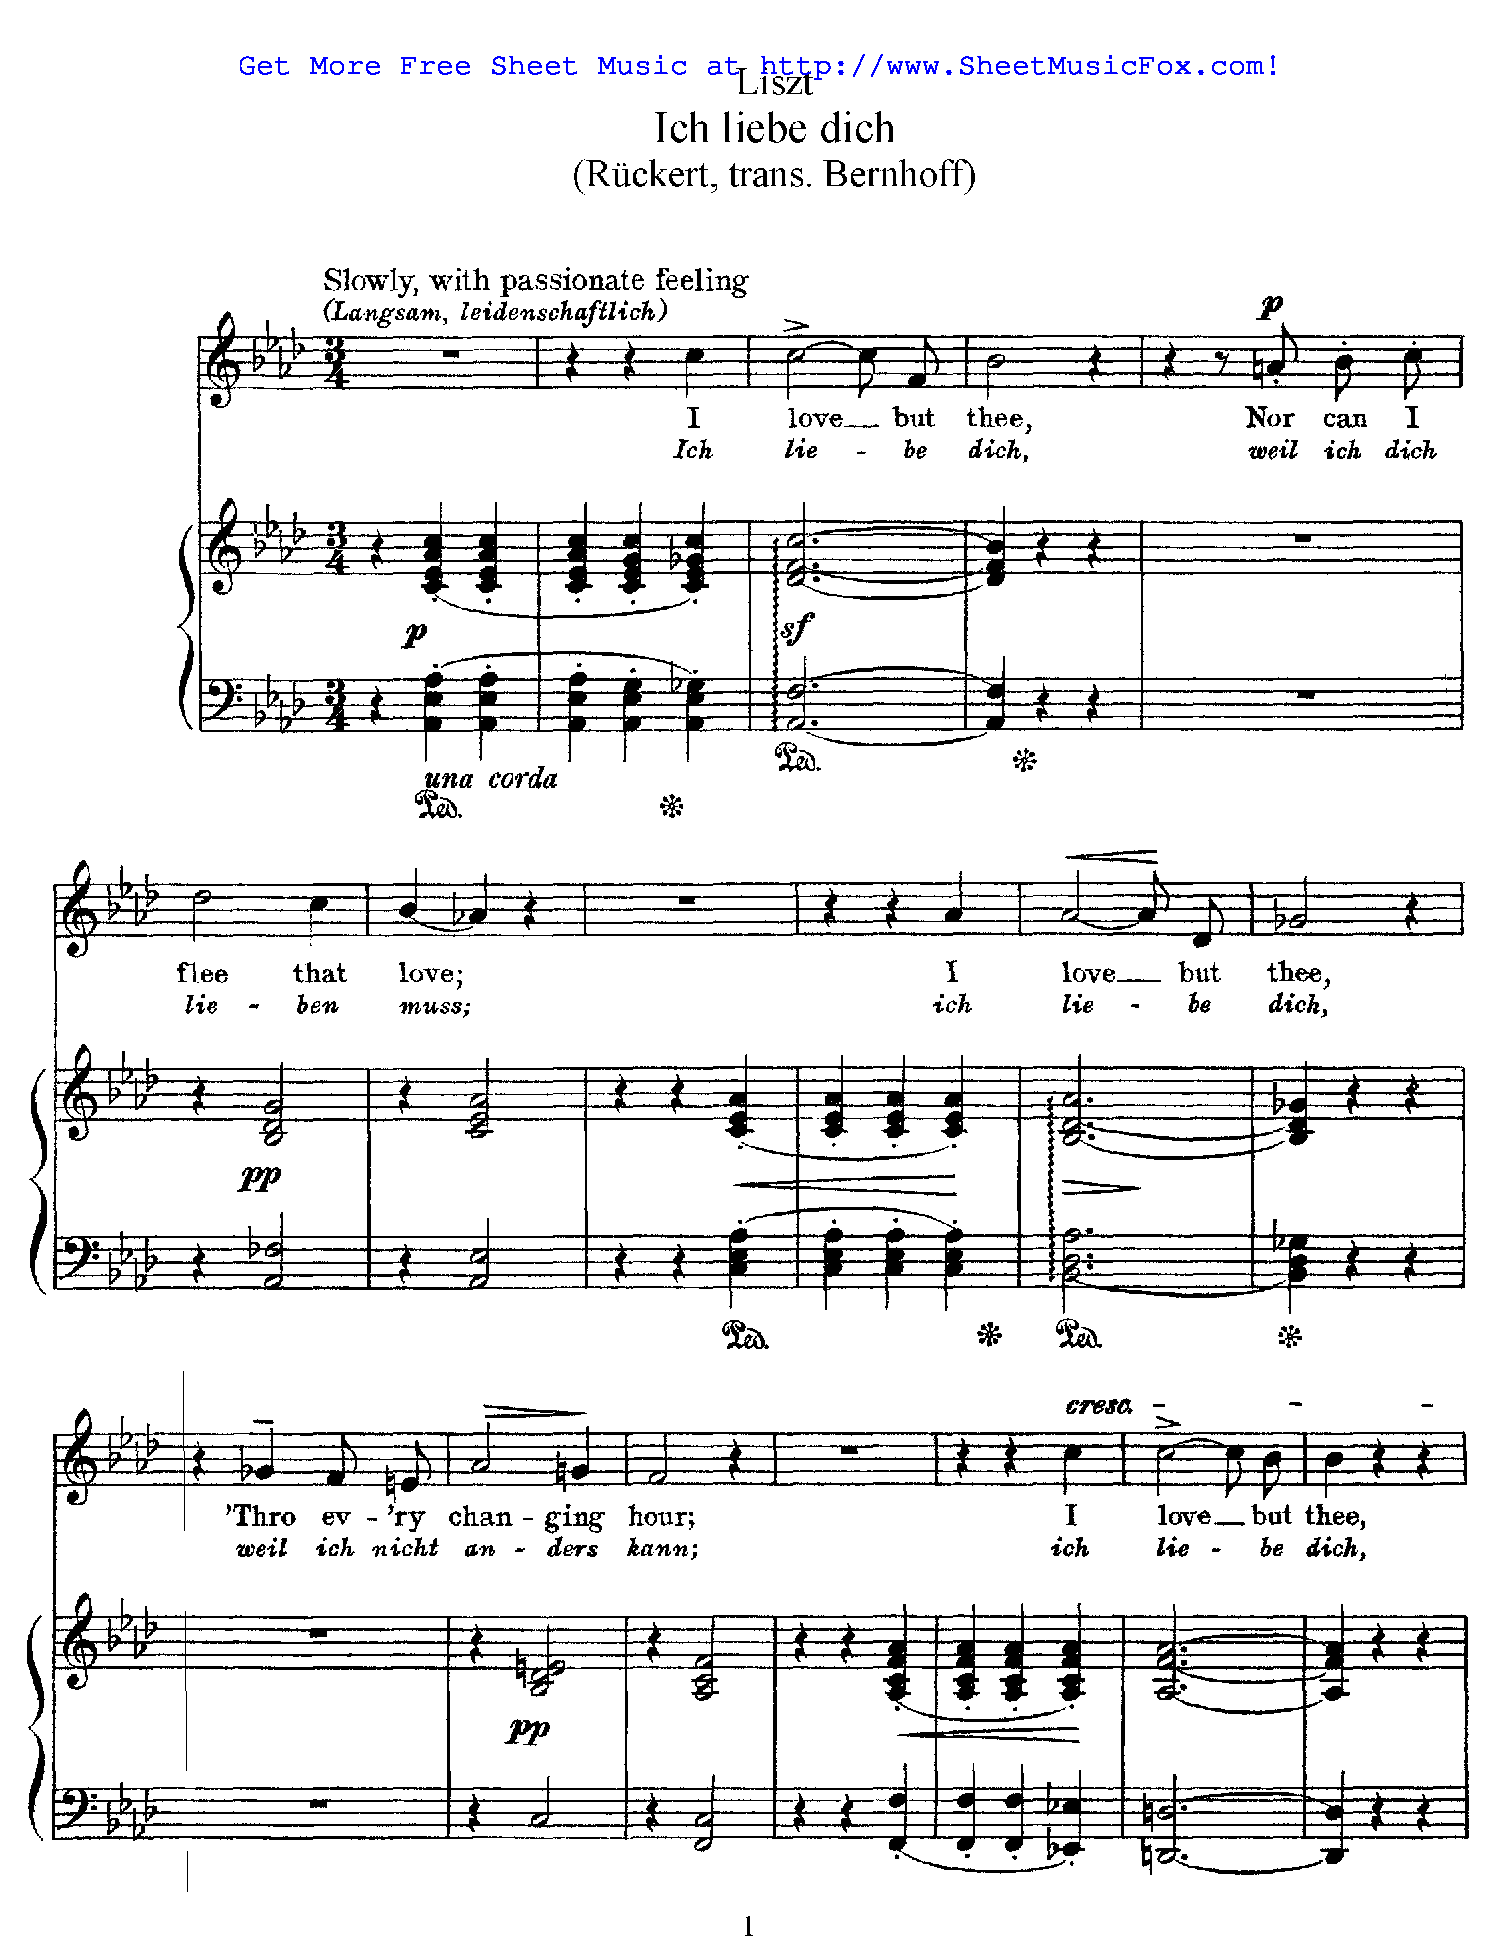 Ich liebe dich, S.315 (Liszt, Franz) sheet music.